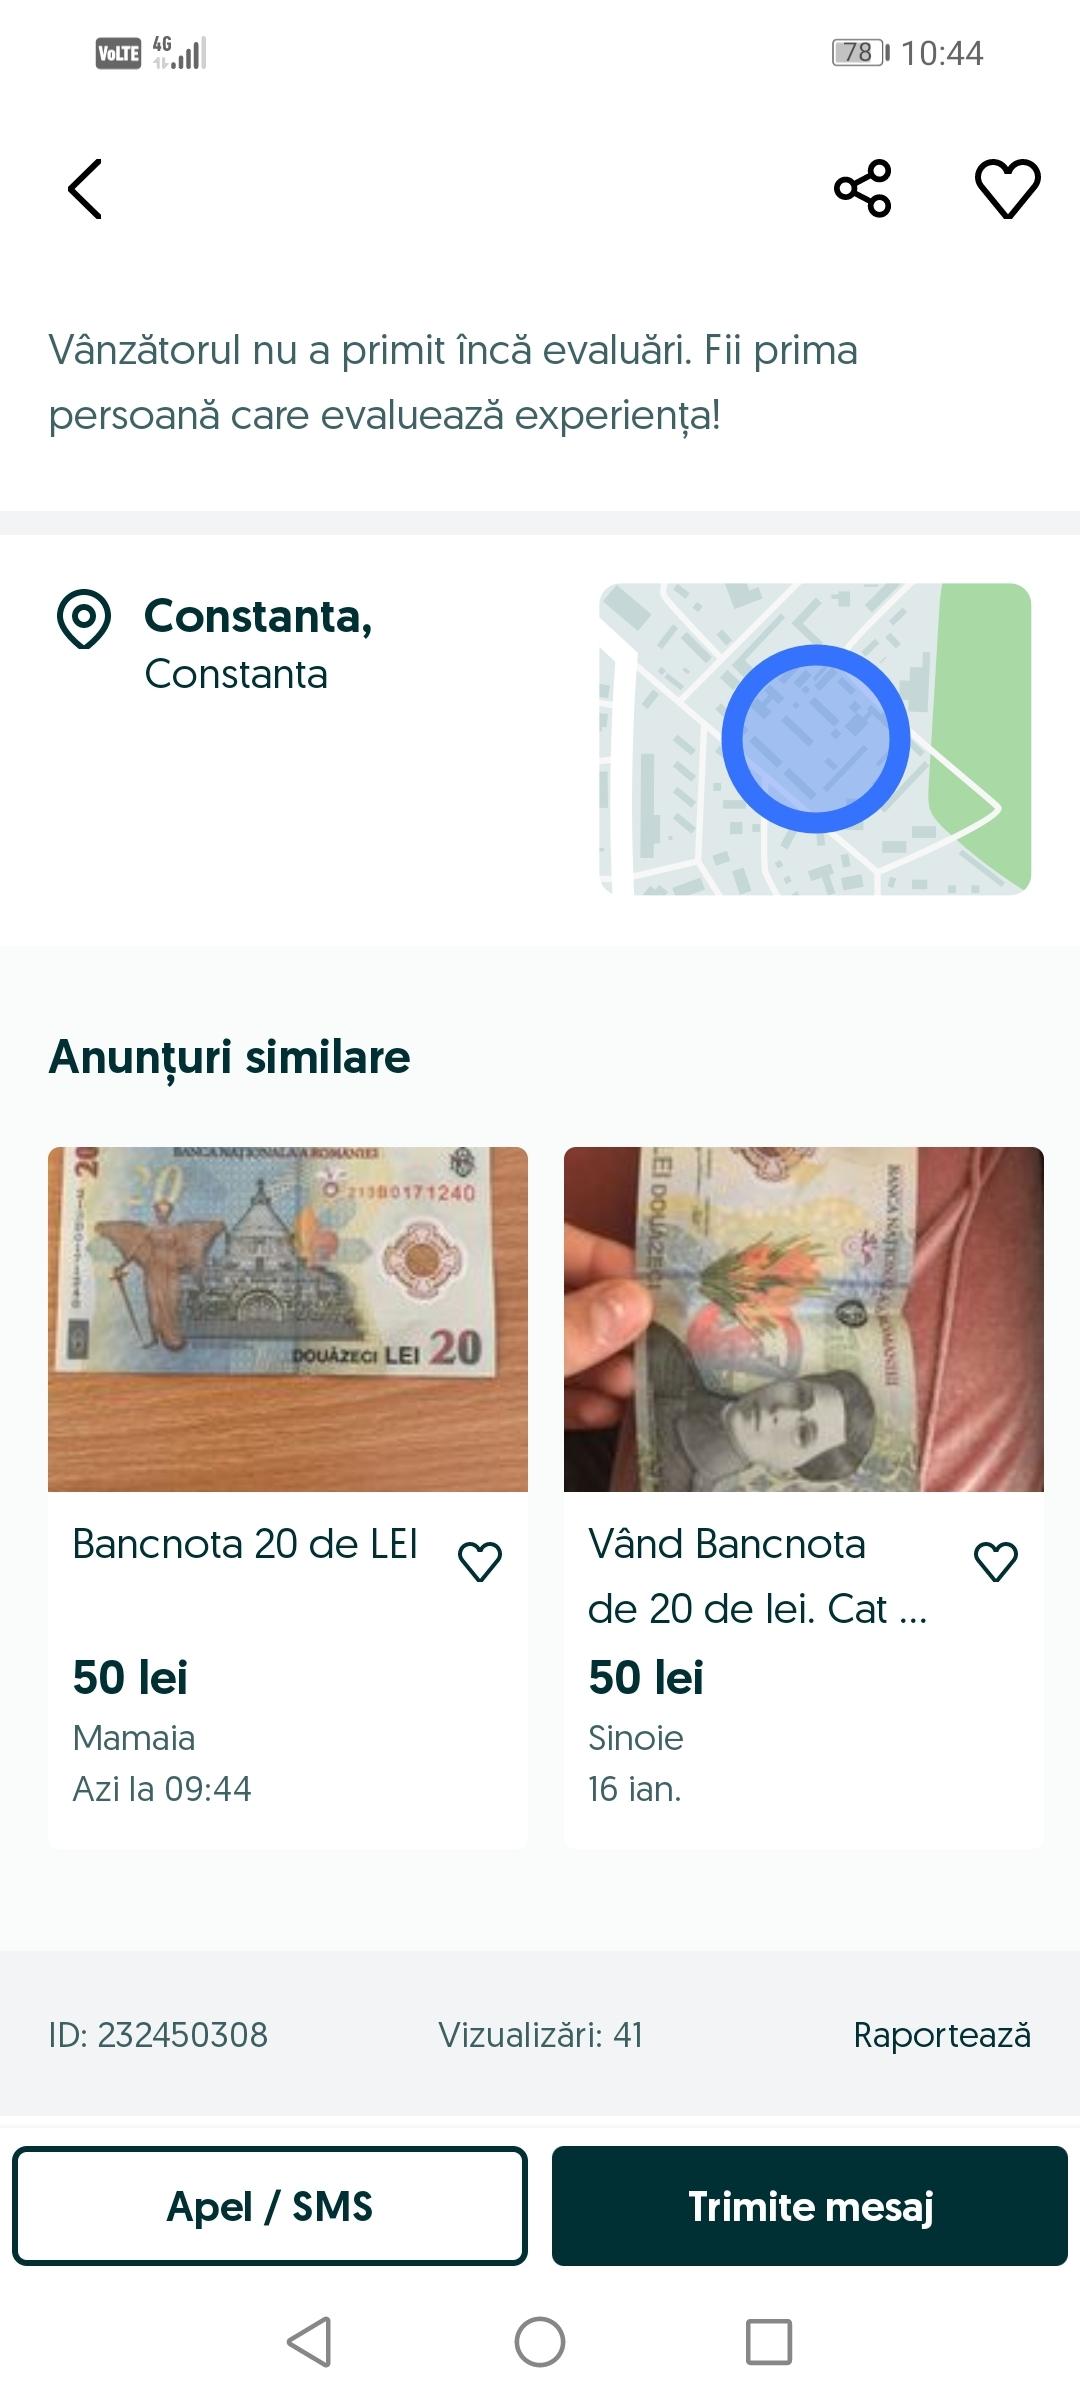 Românii sunt inventivi şi vând bancnotele de 20 de lei pe internet